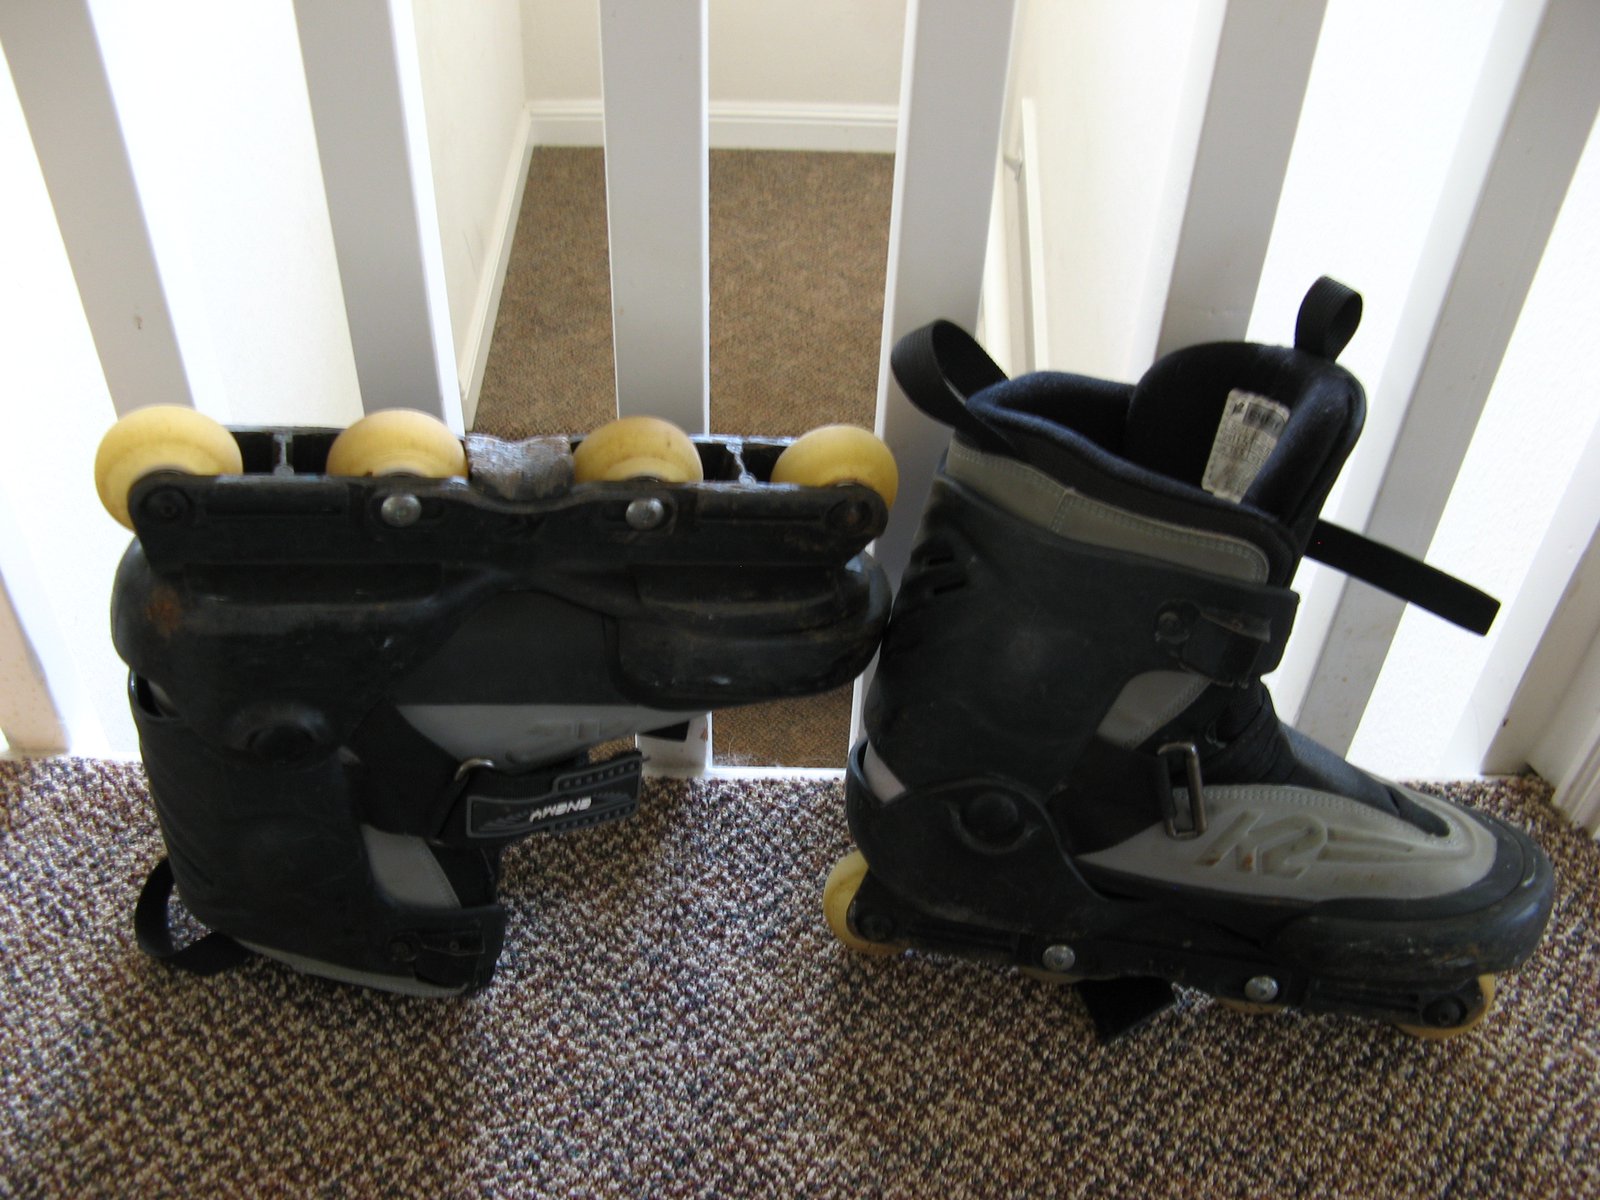 K2 skates